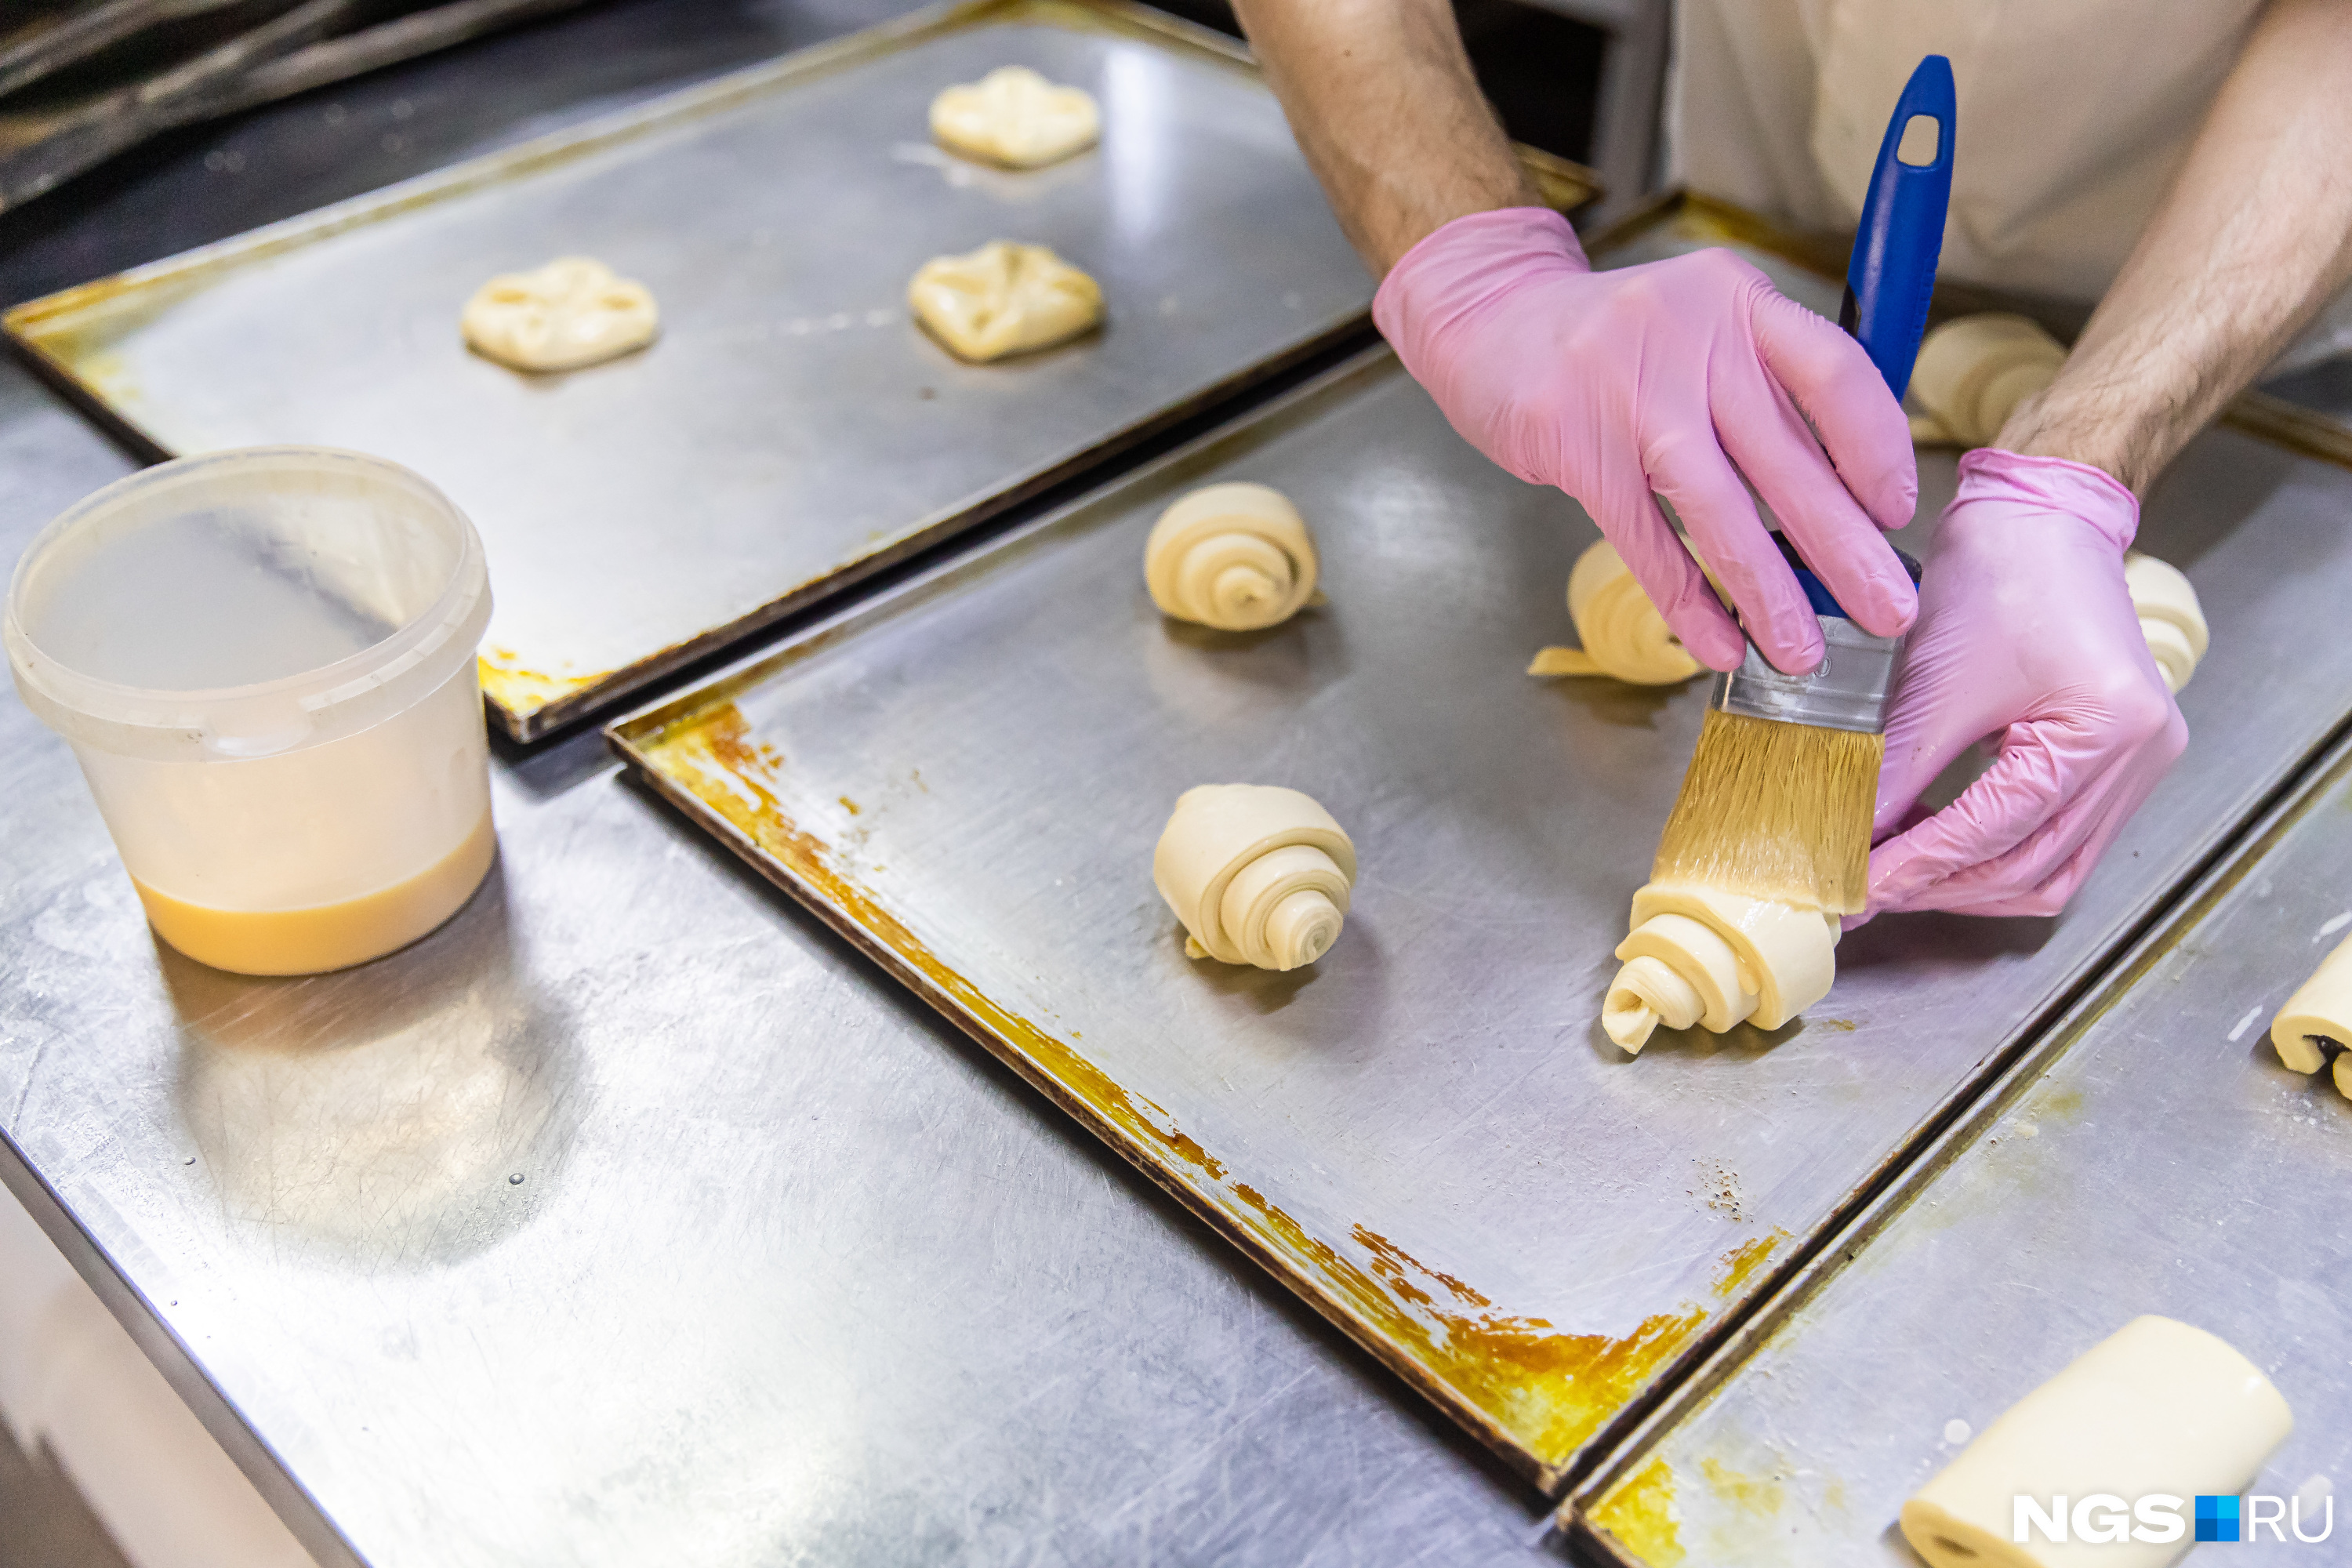 К выпечке в пекарне прикасаются только в перчатках, трогать ее руками строго запрещено